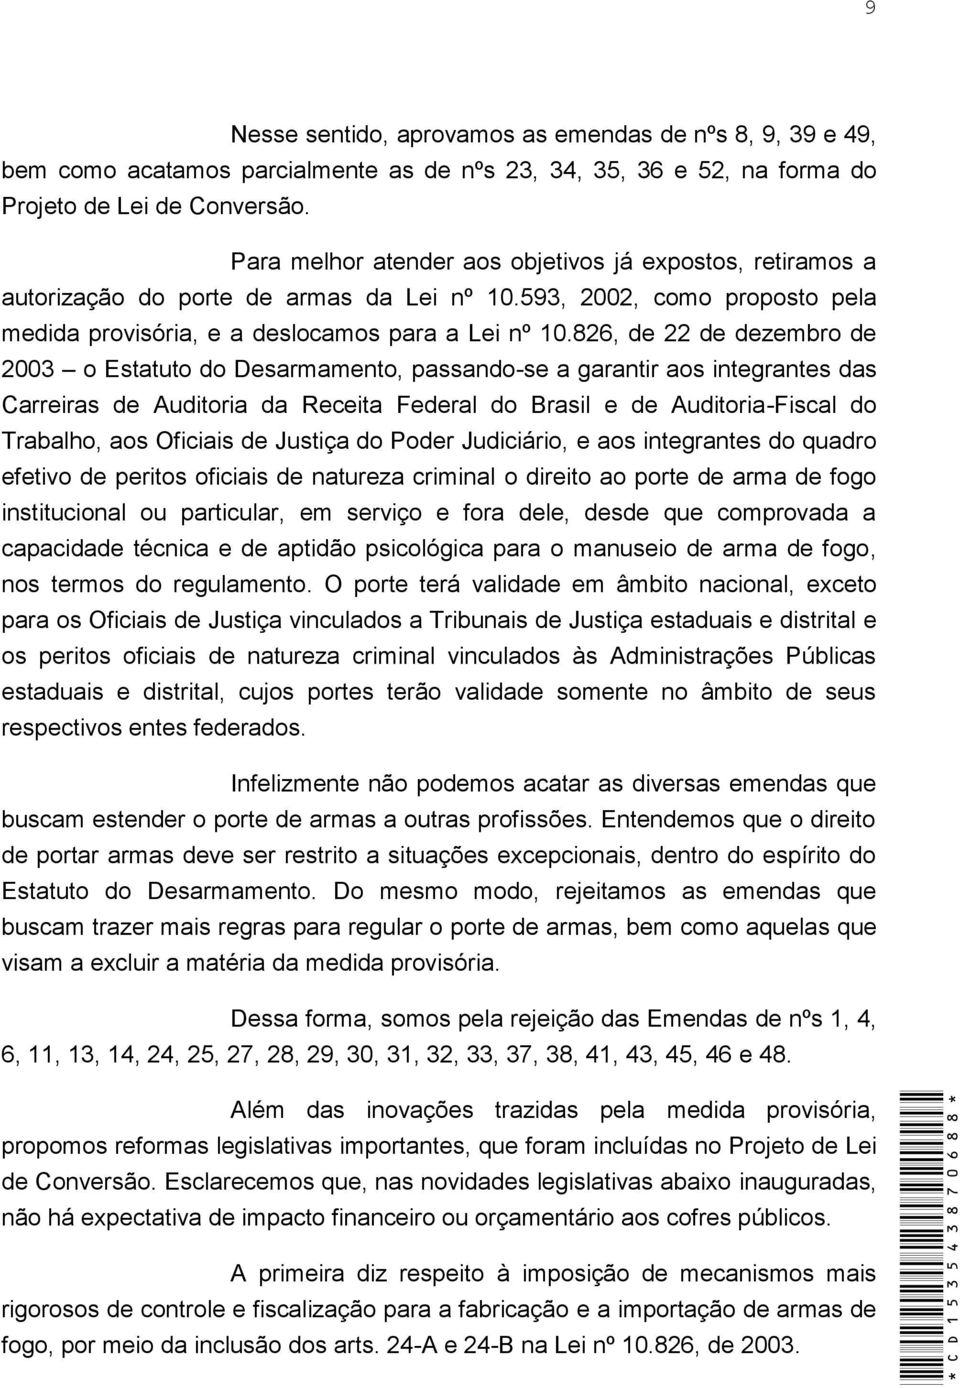 826, de 22 de dezembro de 2003 o Estatuto do Desarmamento, passando-se a garantir aos integrantes das Carreiras de Auditoria da Receita Federal do Brasil e de Auditoria-Fiscal do Trabalho, aos